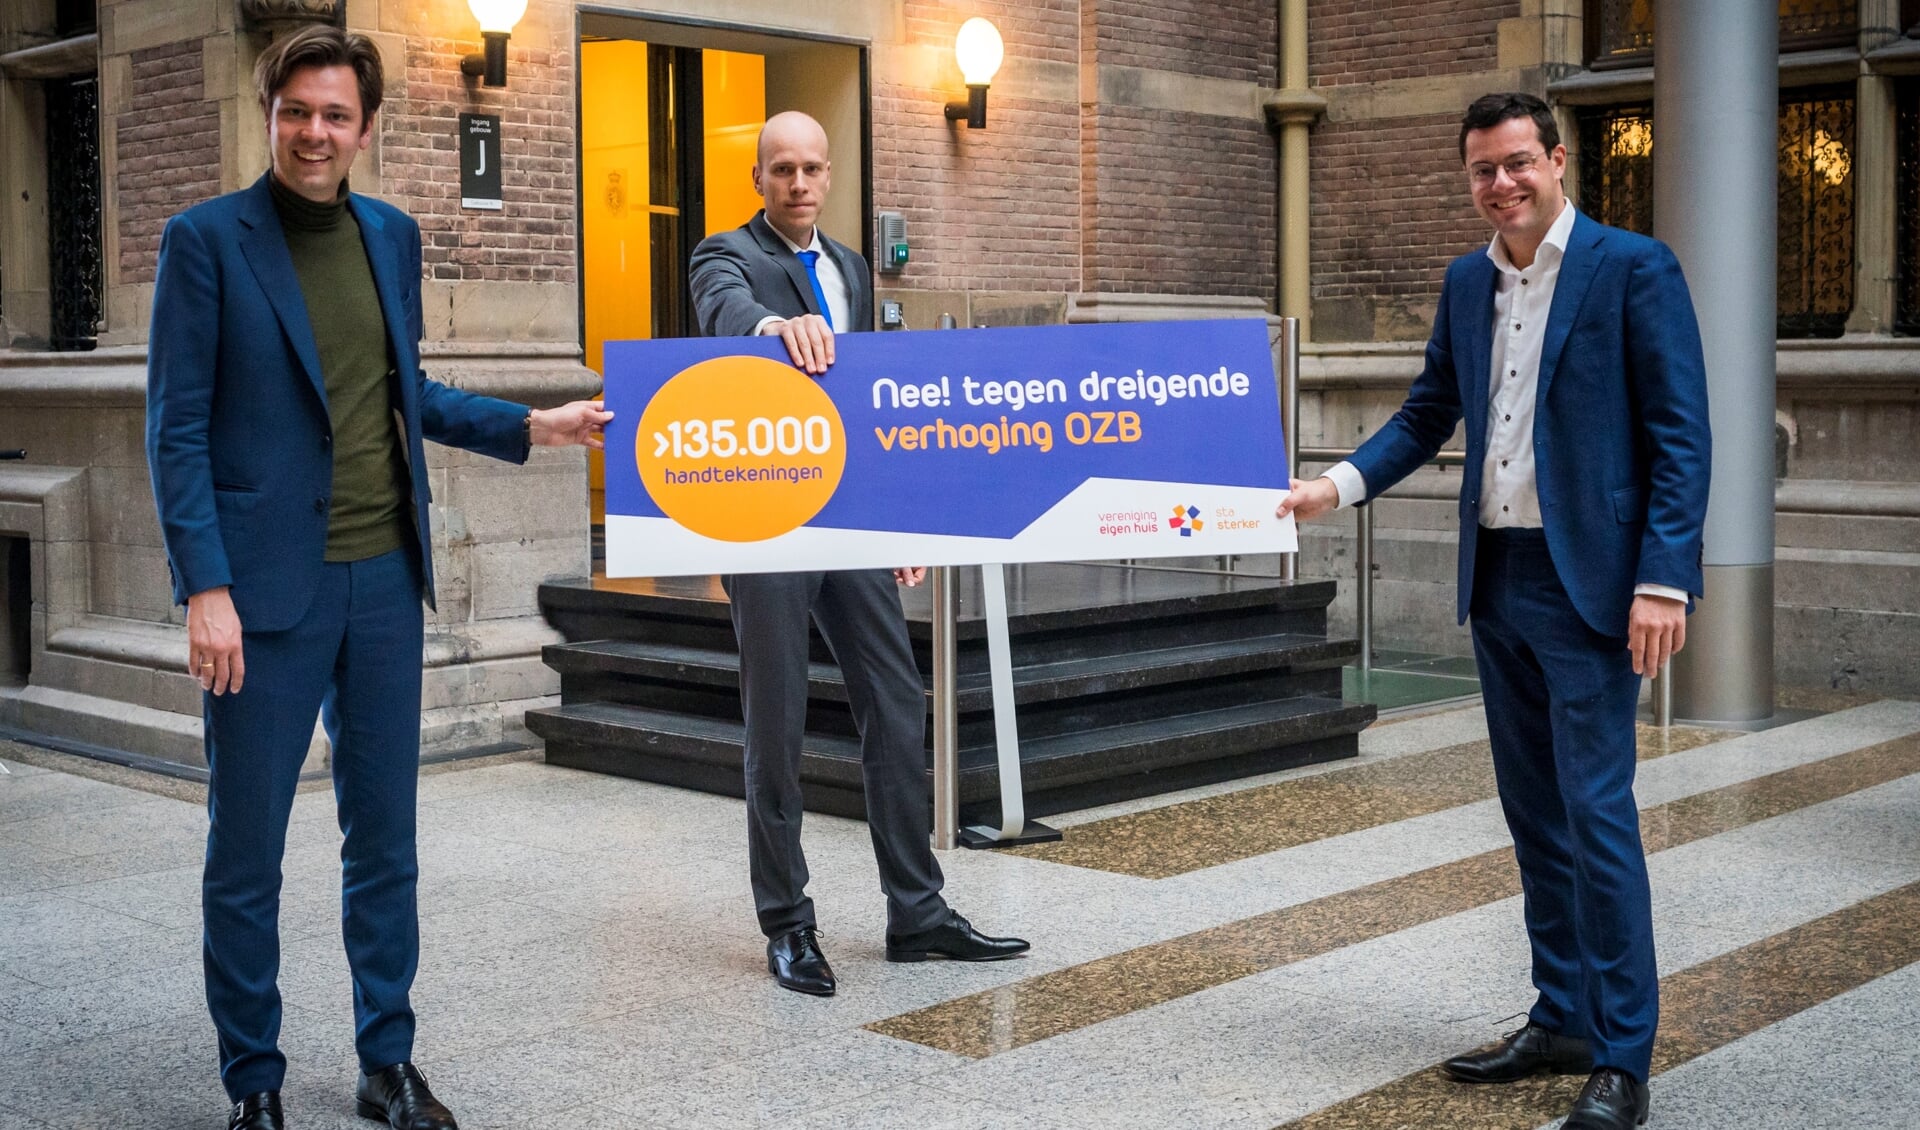 Overhandiging petitie met vlnr Julius Terpstra (CDA), Daniel Koerhuis (VVD) en Karsten Klein, directeur belangenbehartiging Vereniging Eigen Huis. 